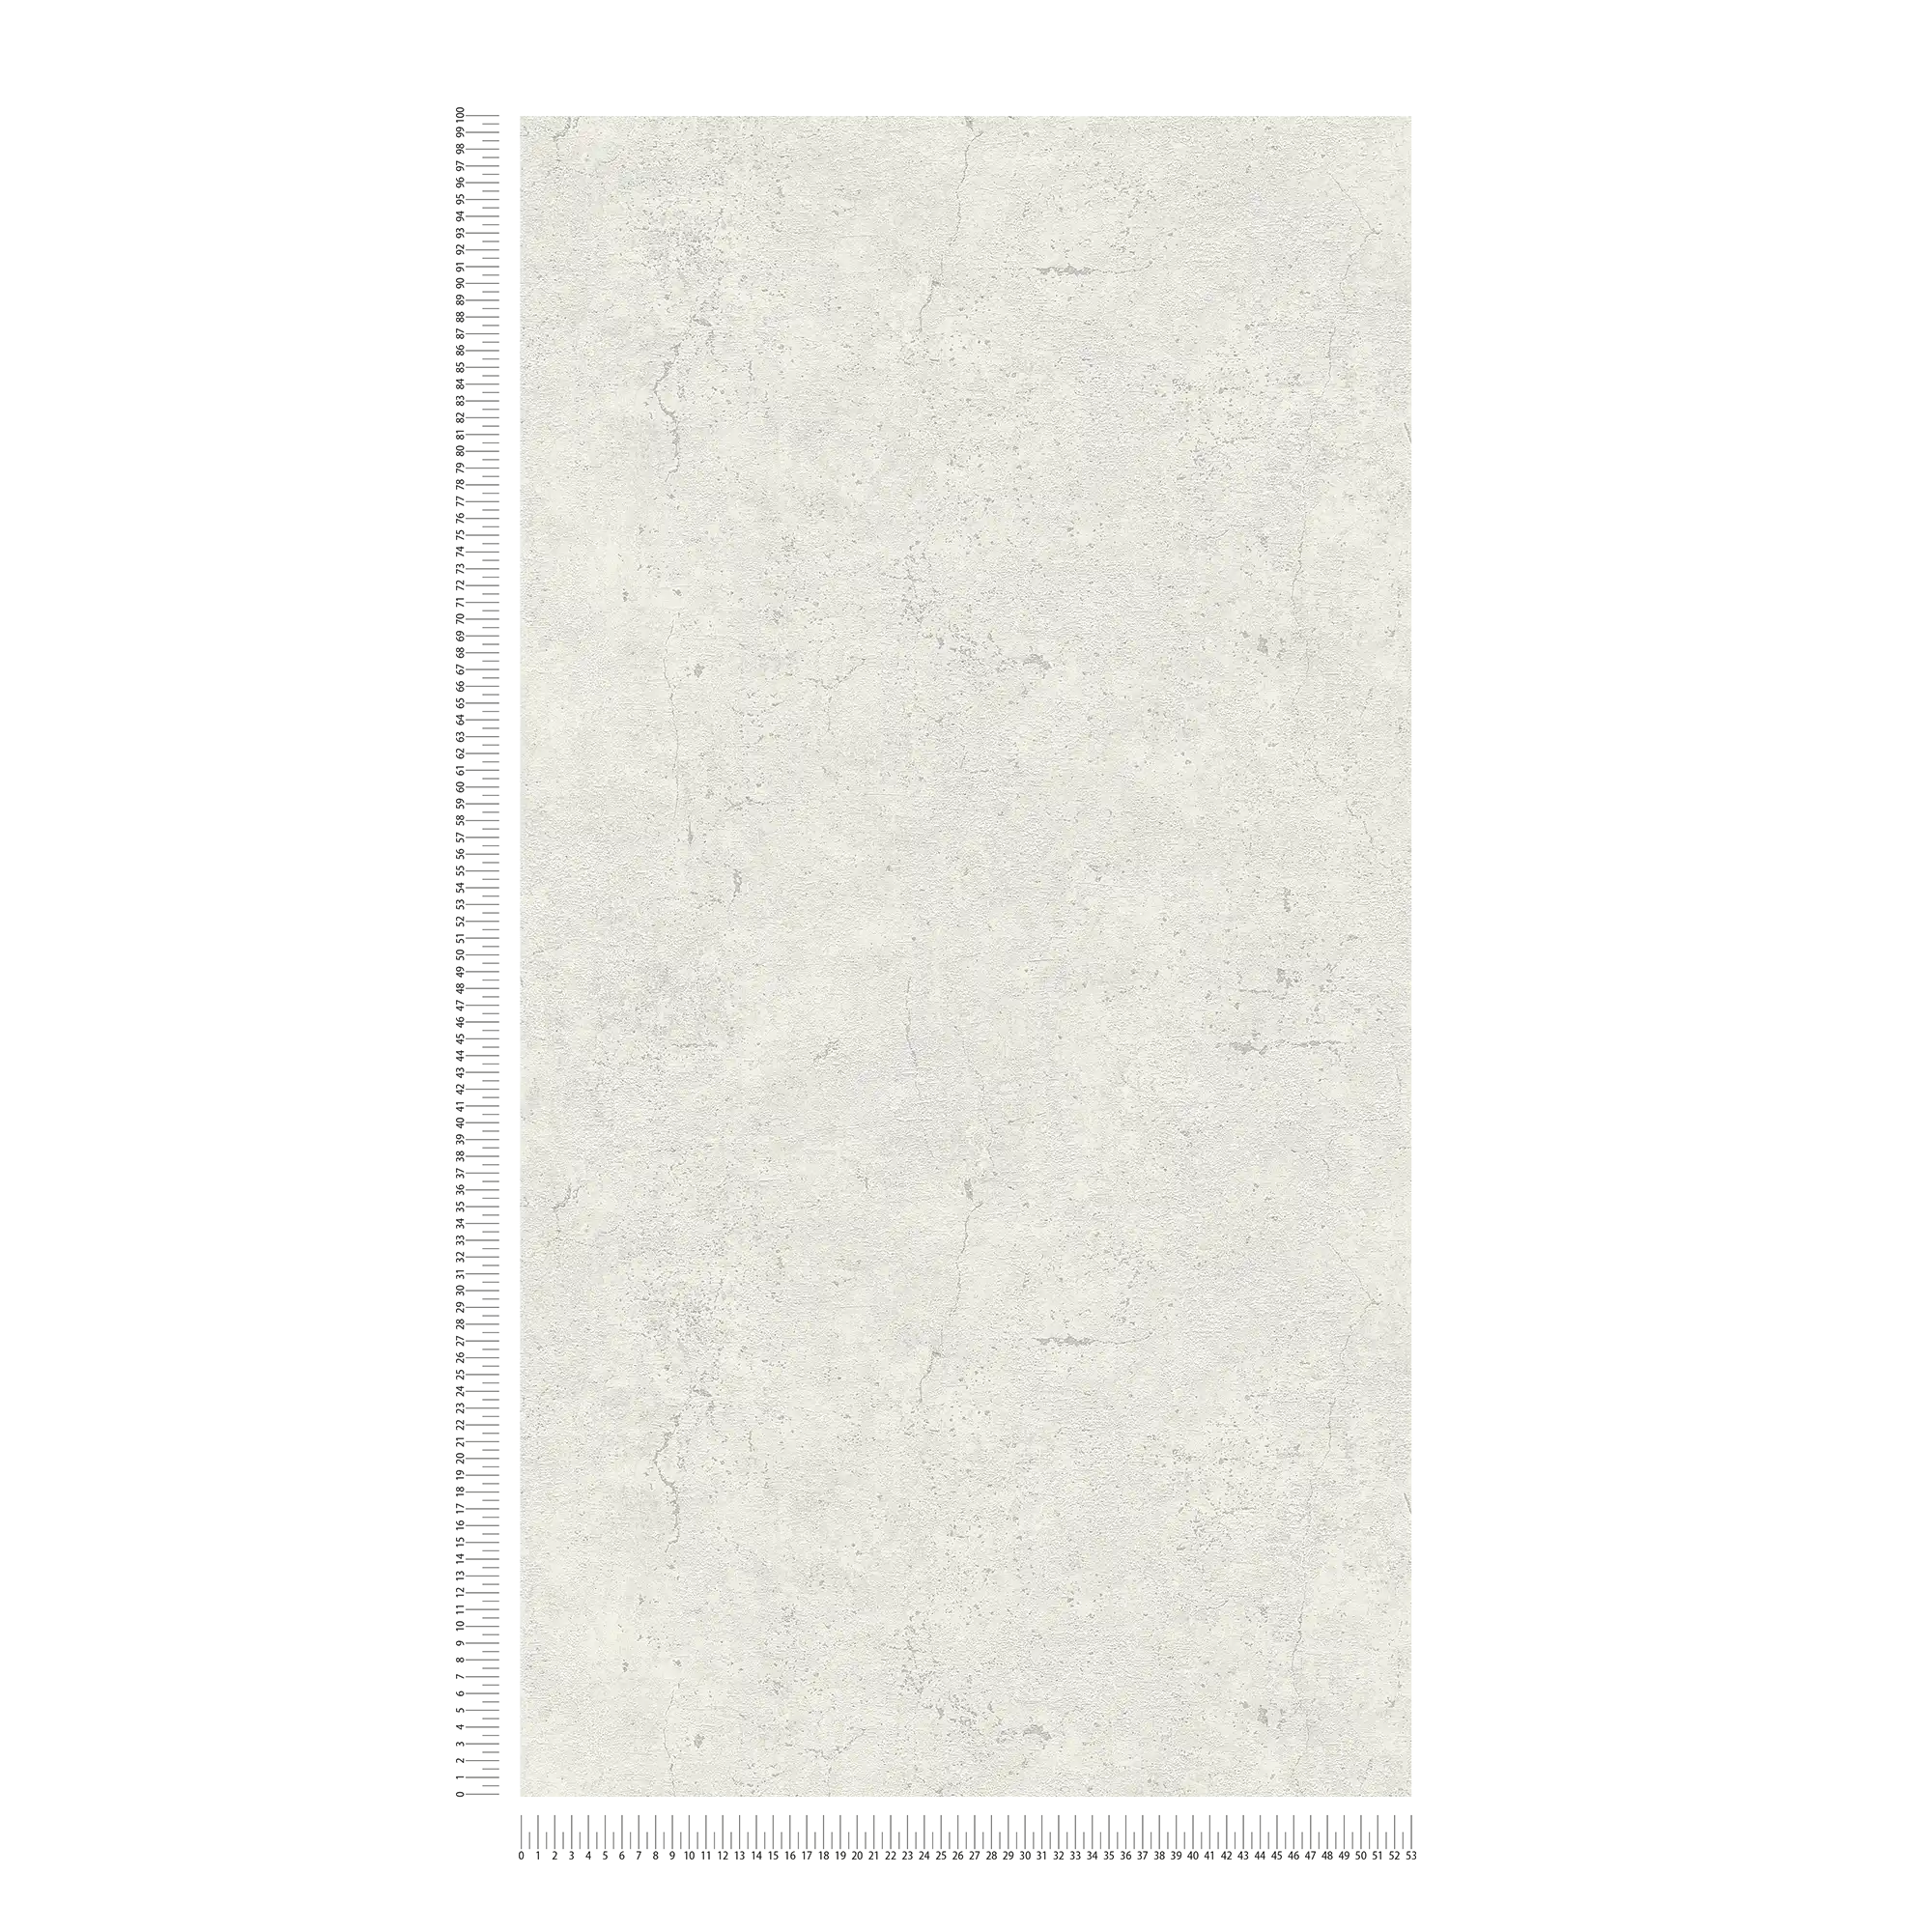             papel pintado aspecto rústico en estilo industrial - gris claro
        